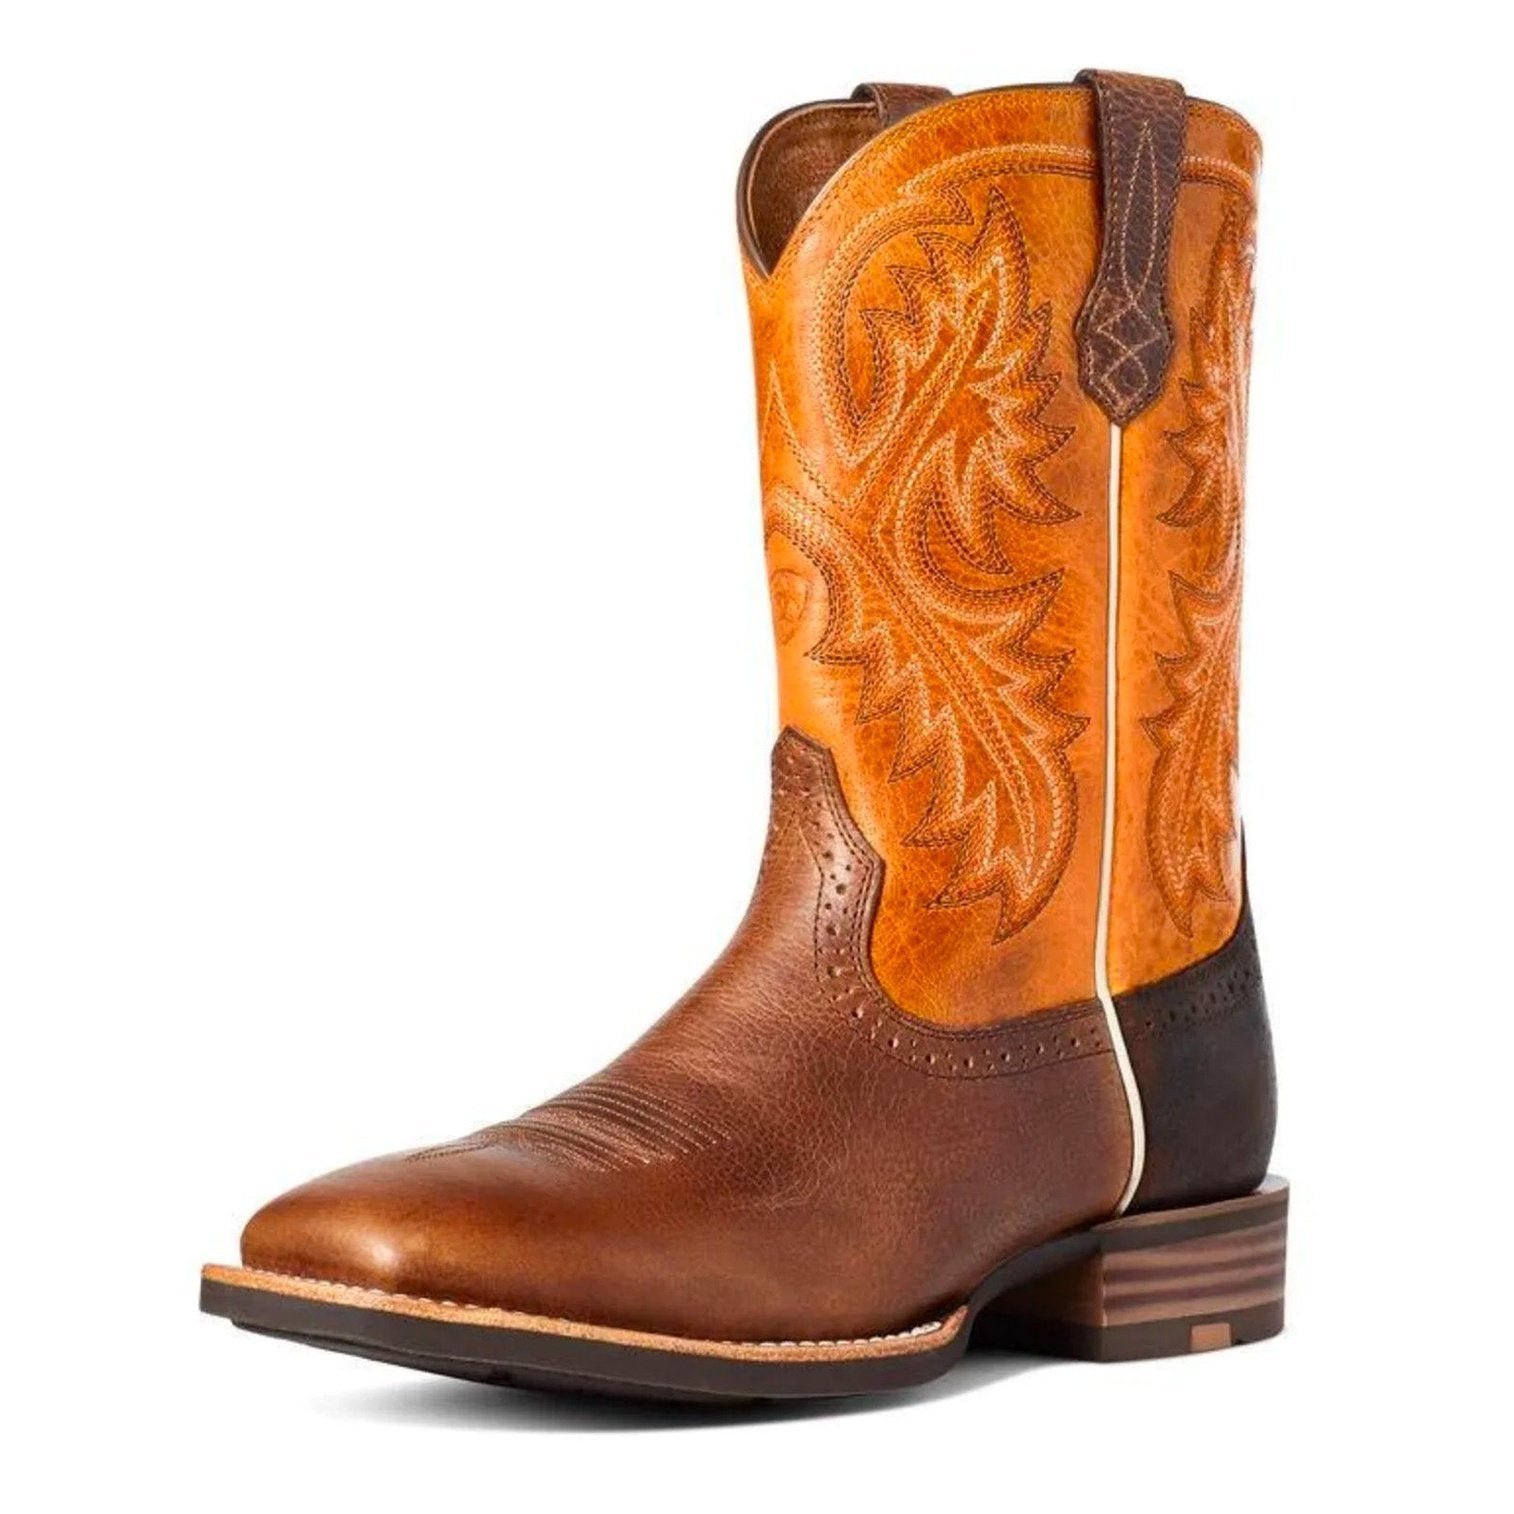 Ariat Men's Cowboy Boots Quickdraw 10035998